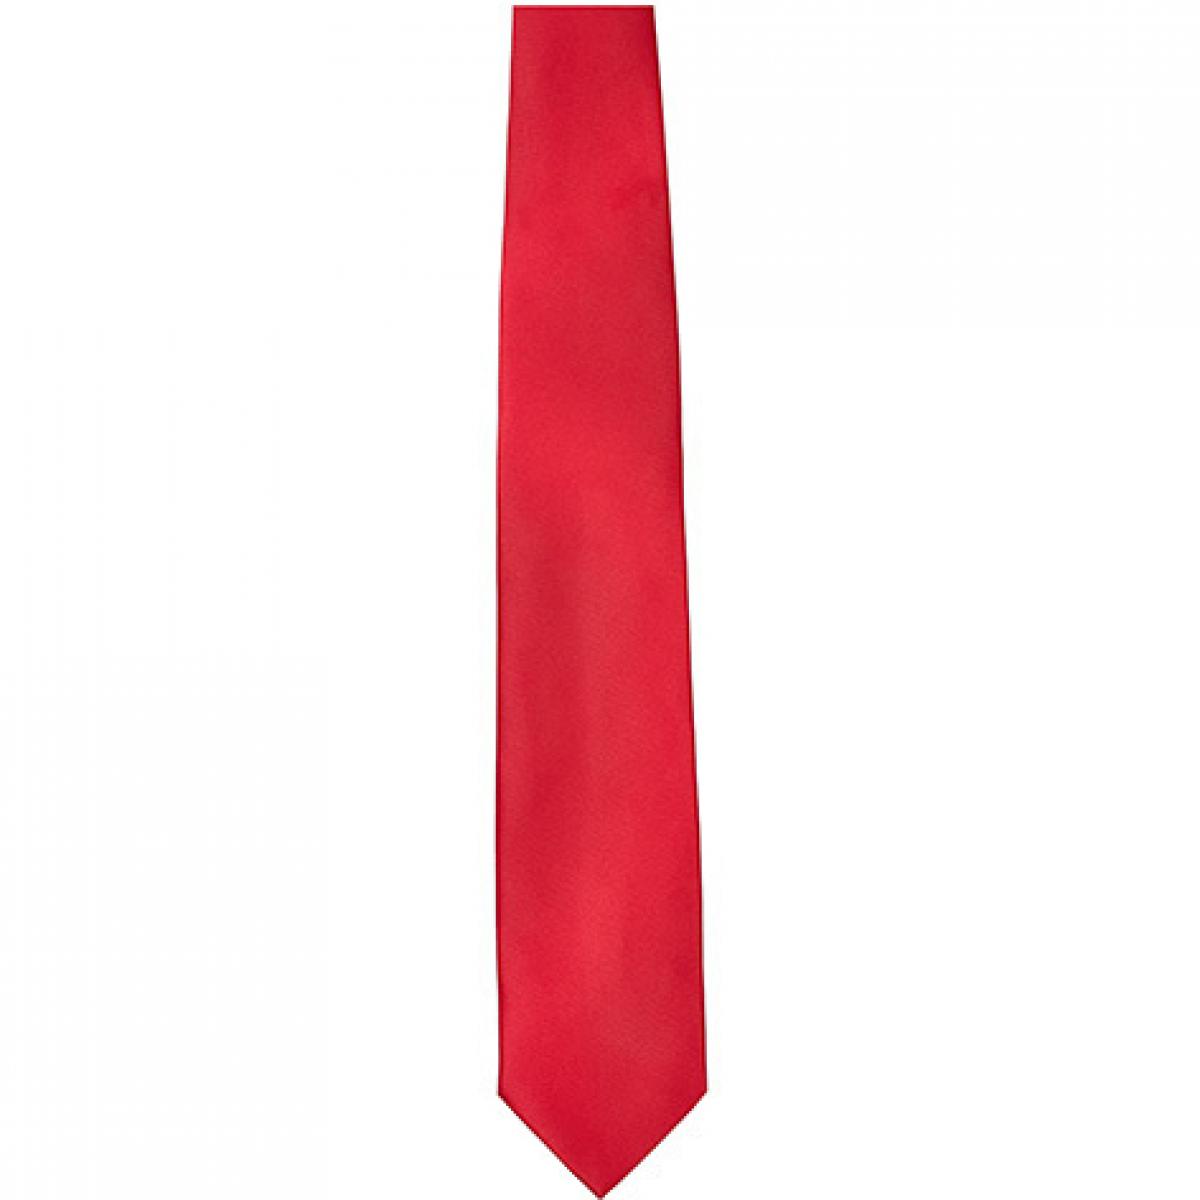 Hersteller: TYTO Herstellernummer: TT901 Artikelbezeichnung: Satin Tie / 144 x 8,5cm /  Zu 100% von Hand genäht Farbe: Red